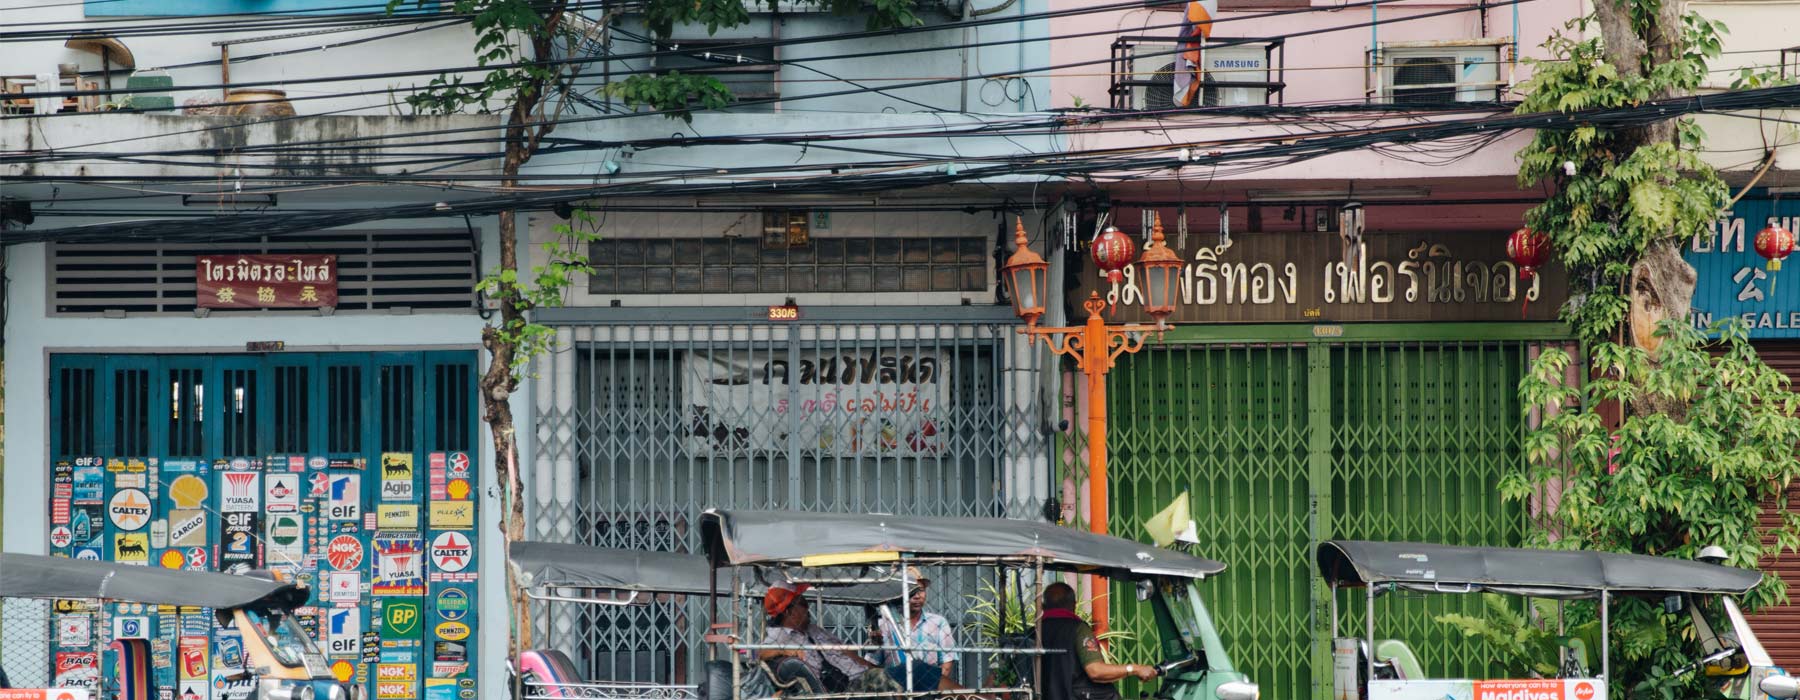  Bangkok and Beyond holidays